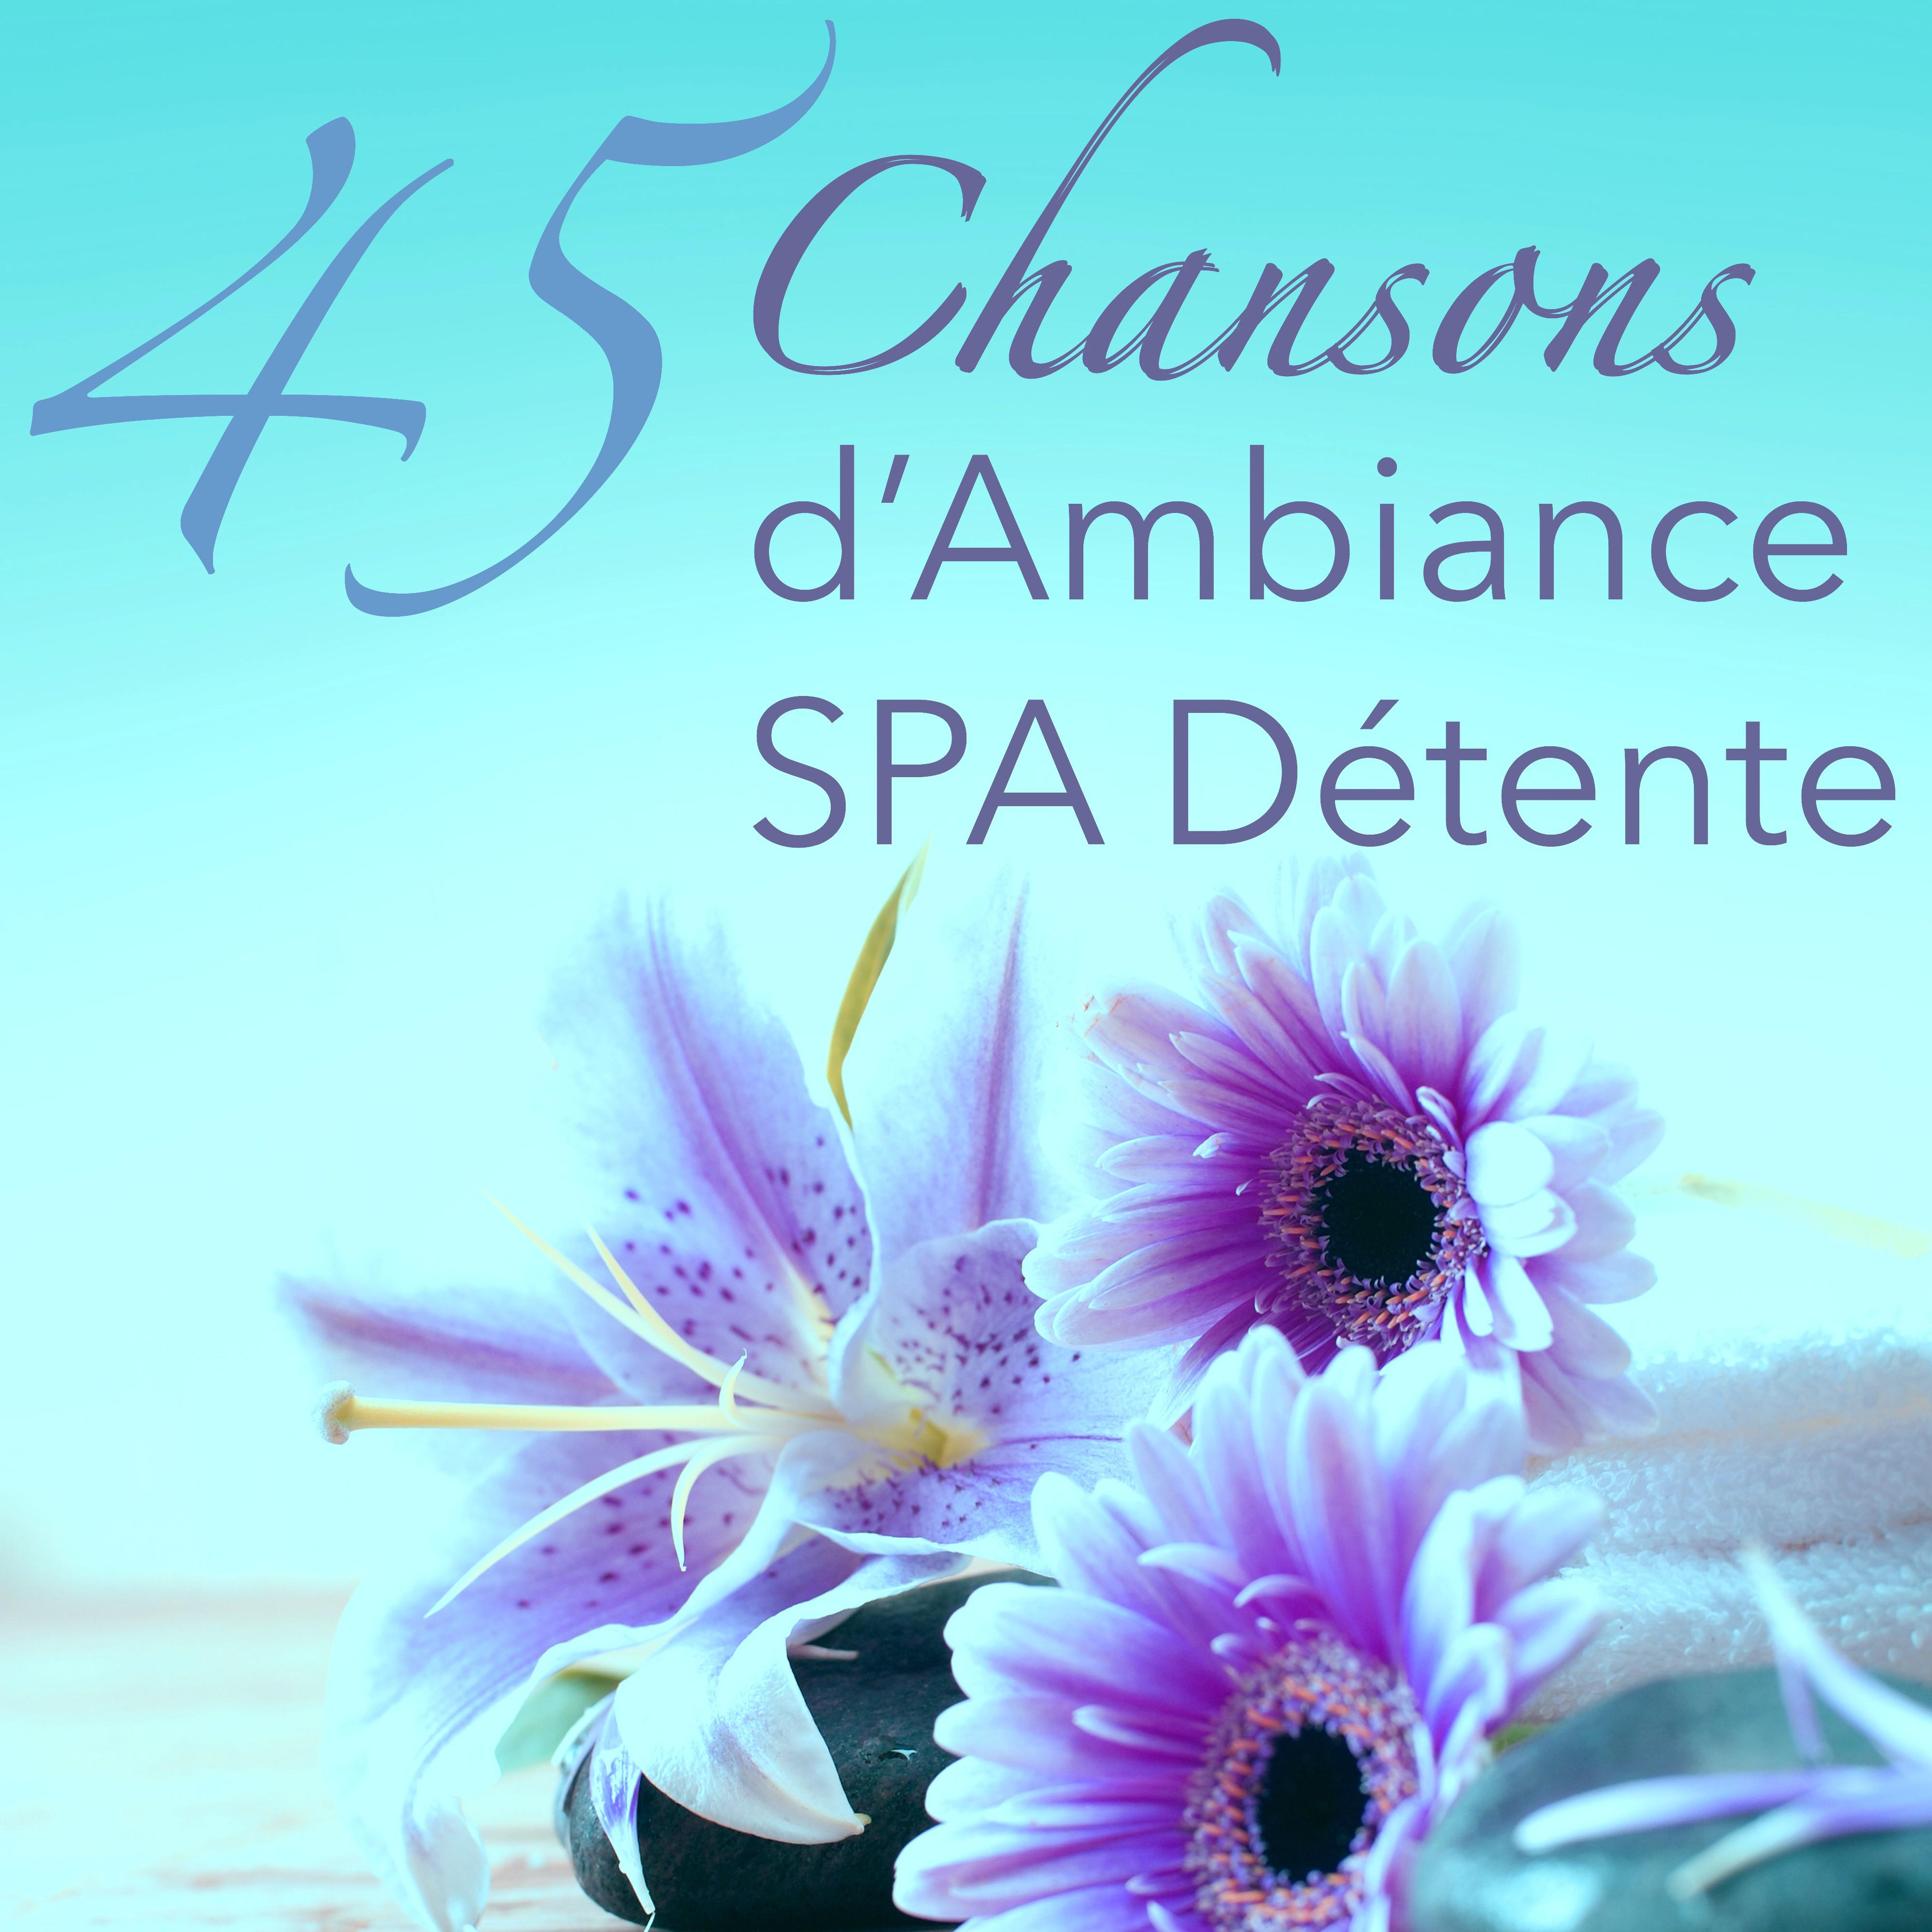 45 Chansons d' Ambiance Spa De tente  Musique Zen Relaxant pour Spa, Zen, Me ditation, Yoga et Massage